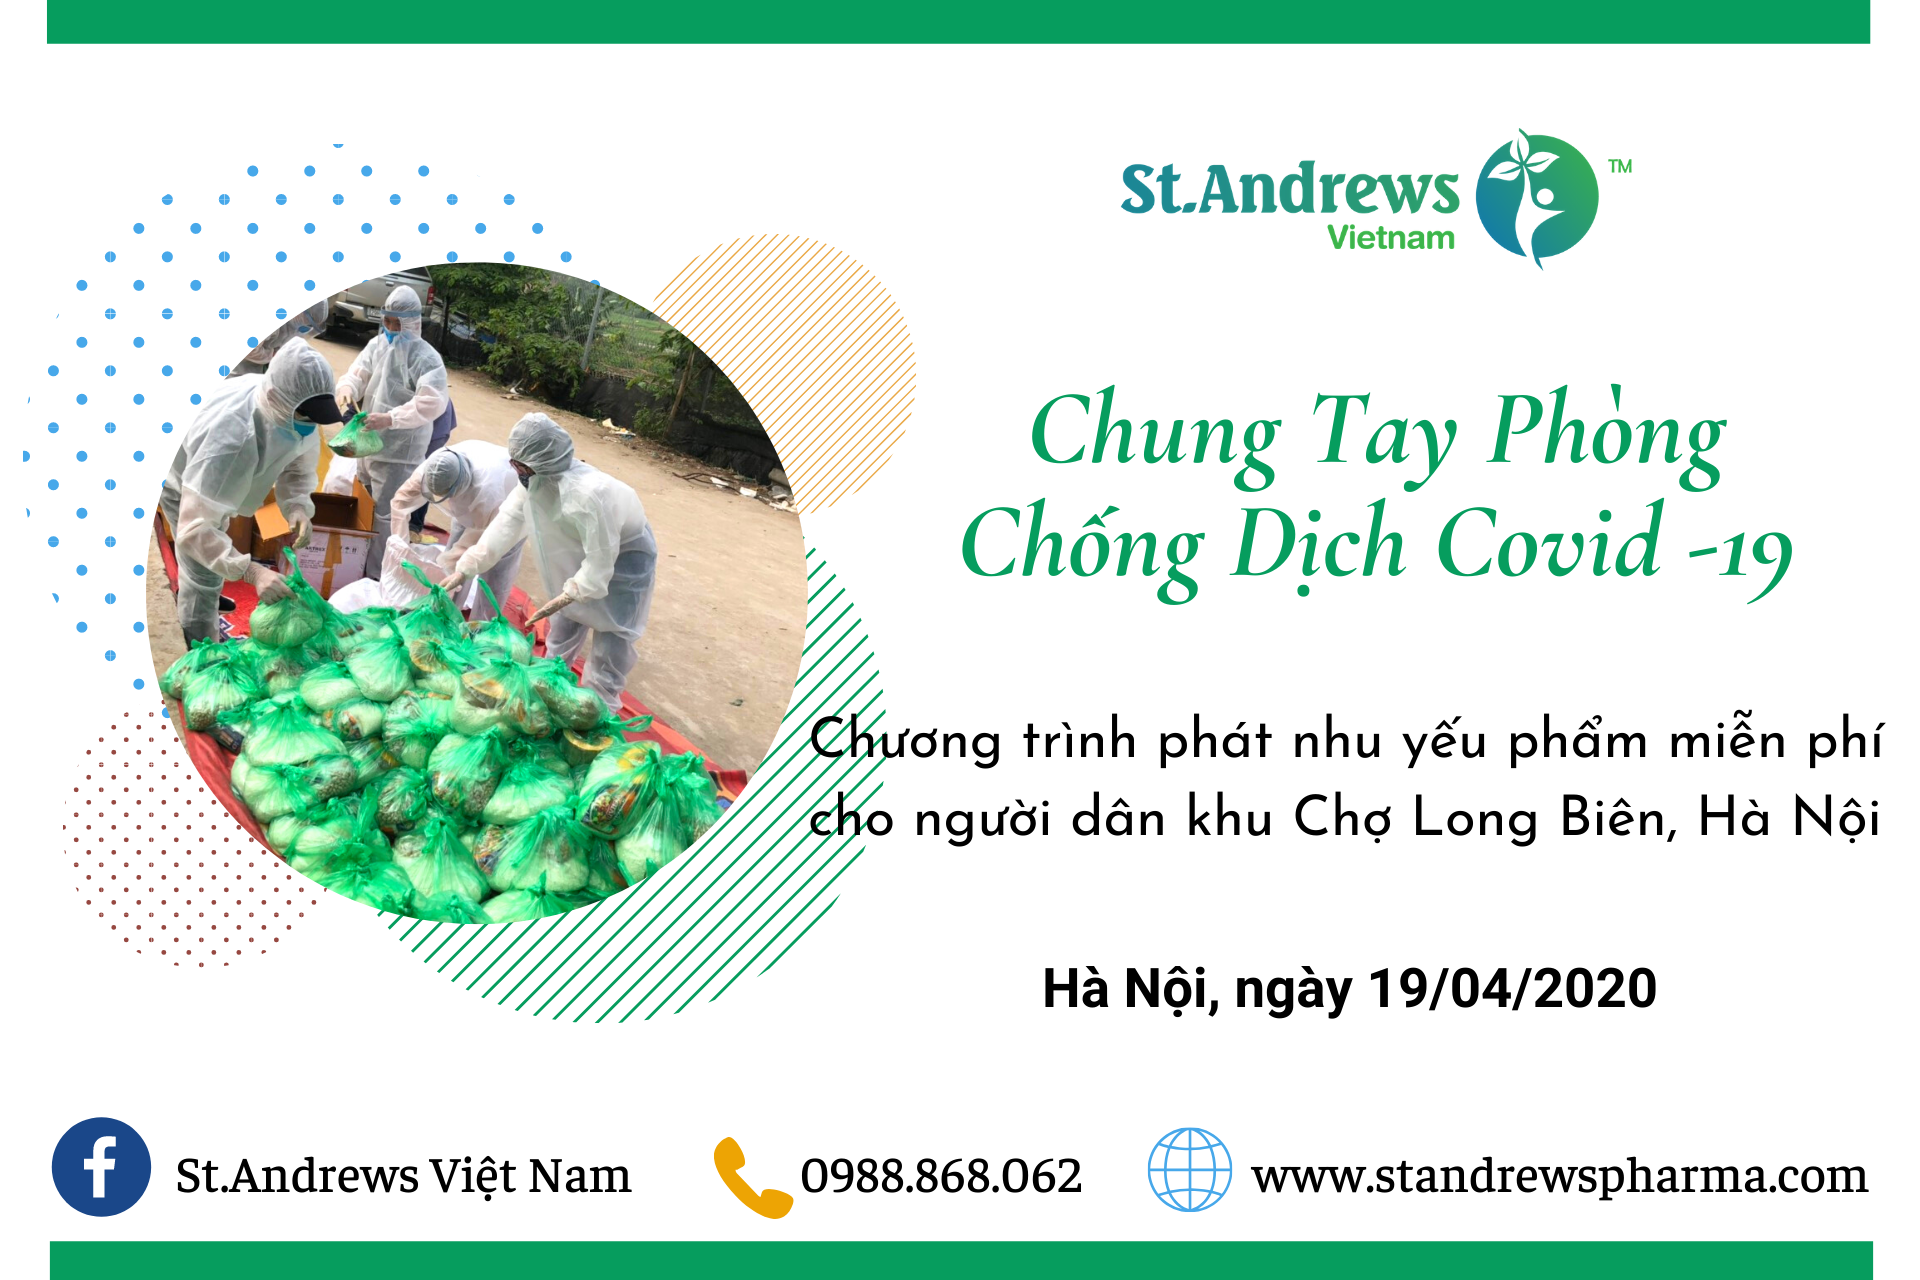 CHUNG TAY ĐẨY LÙI ĐẠI DỊCH COVID - 19 - Dược phẩm St.Andrews Việt Nam tổ chức phát nhu yếu phẩm miễn phí cho người dân nghèo tại Long Biên, Hà Nội